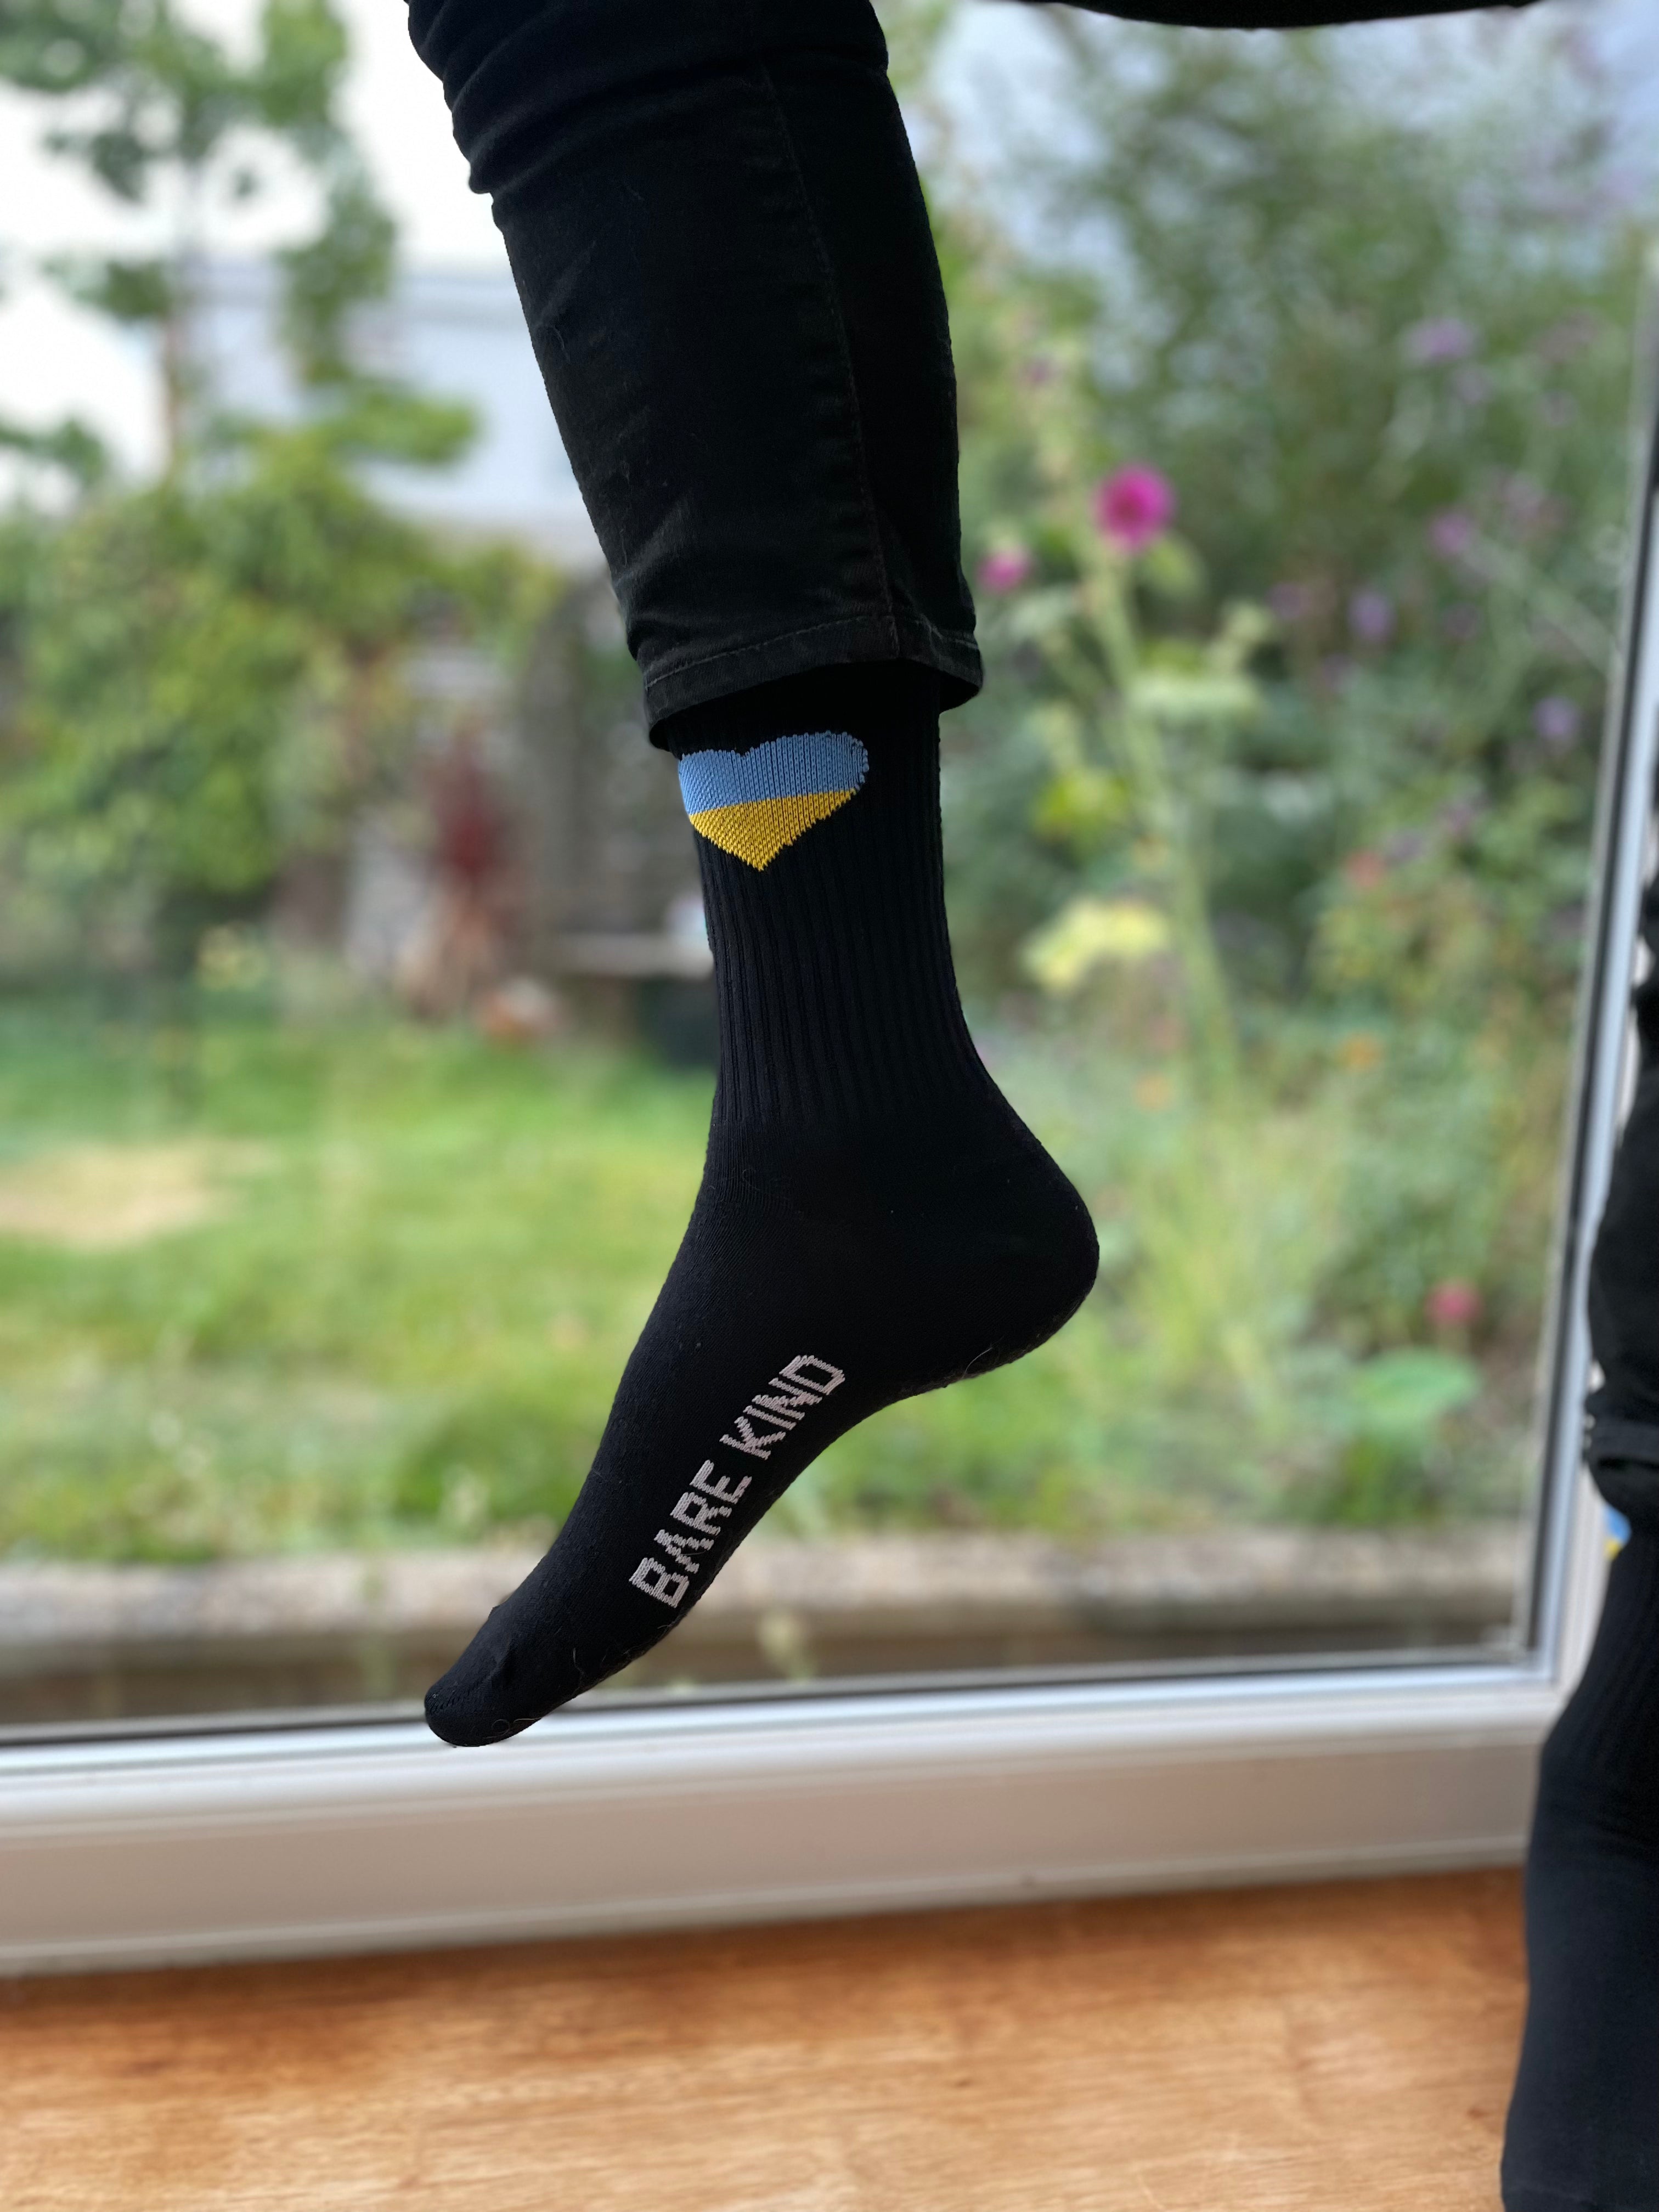 Ukraine Socks - Pack Of 2